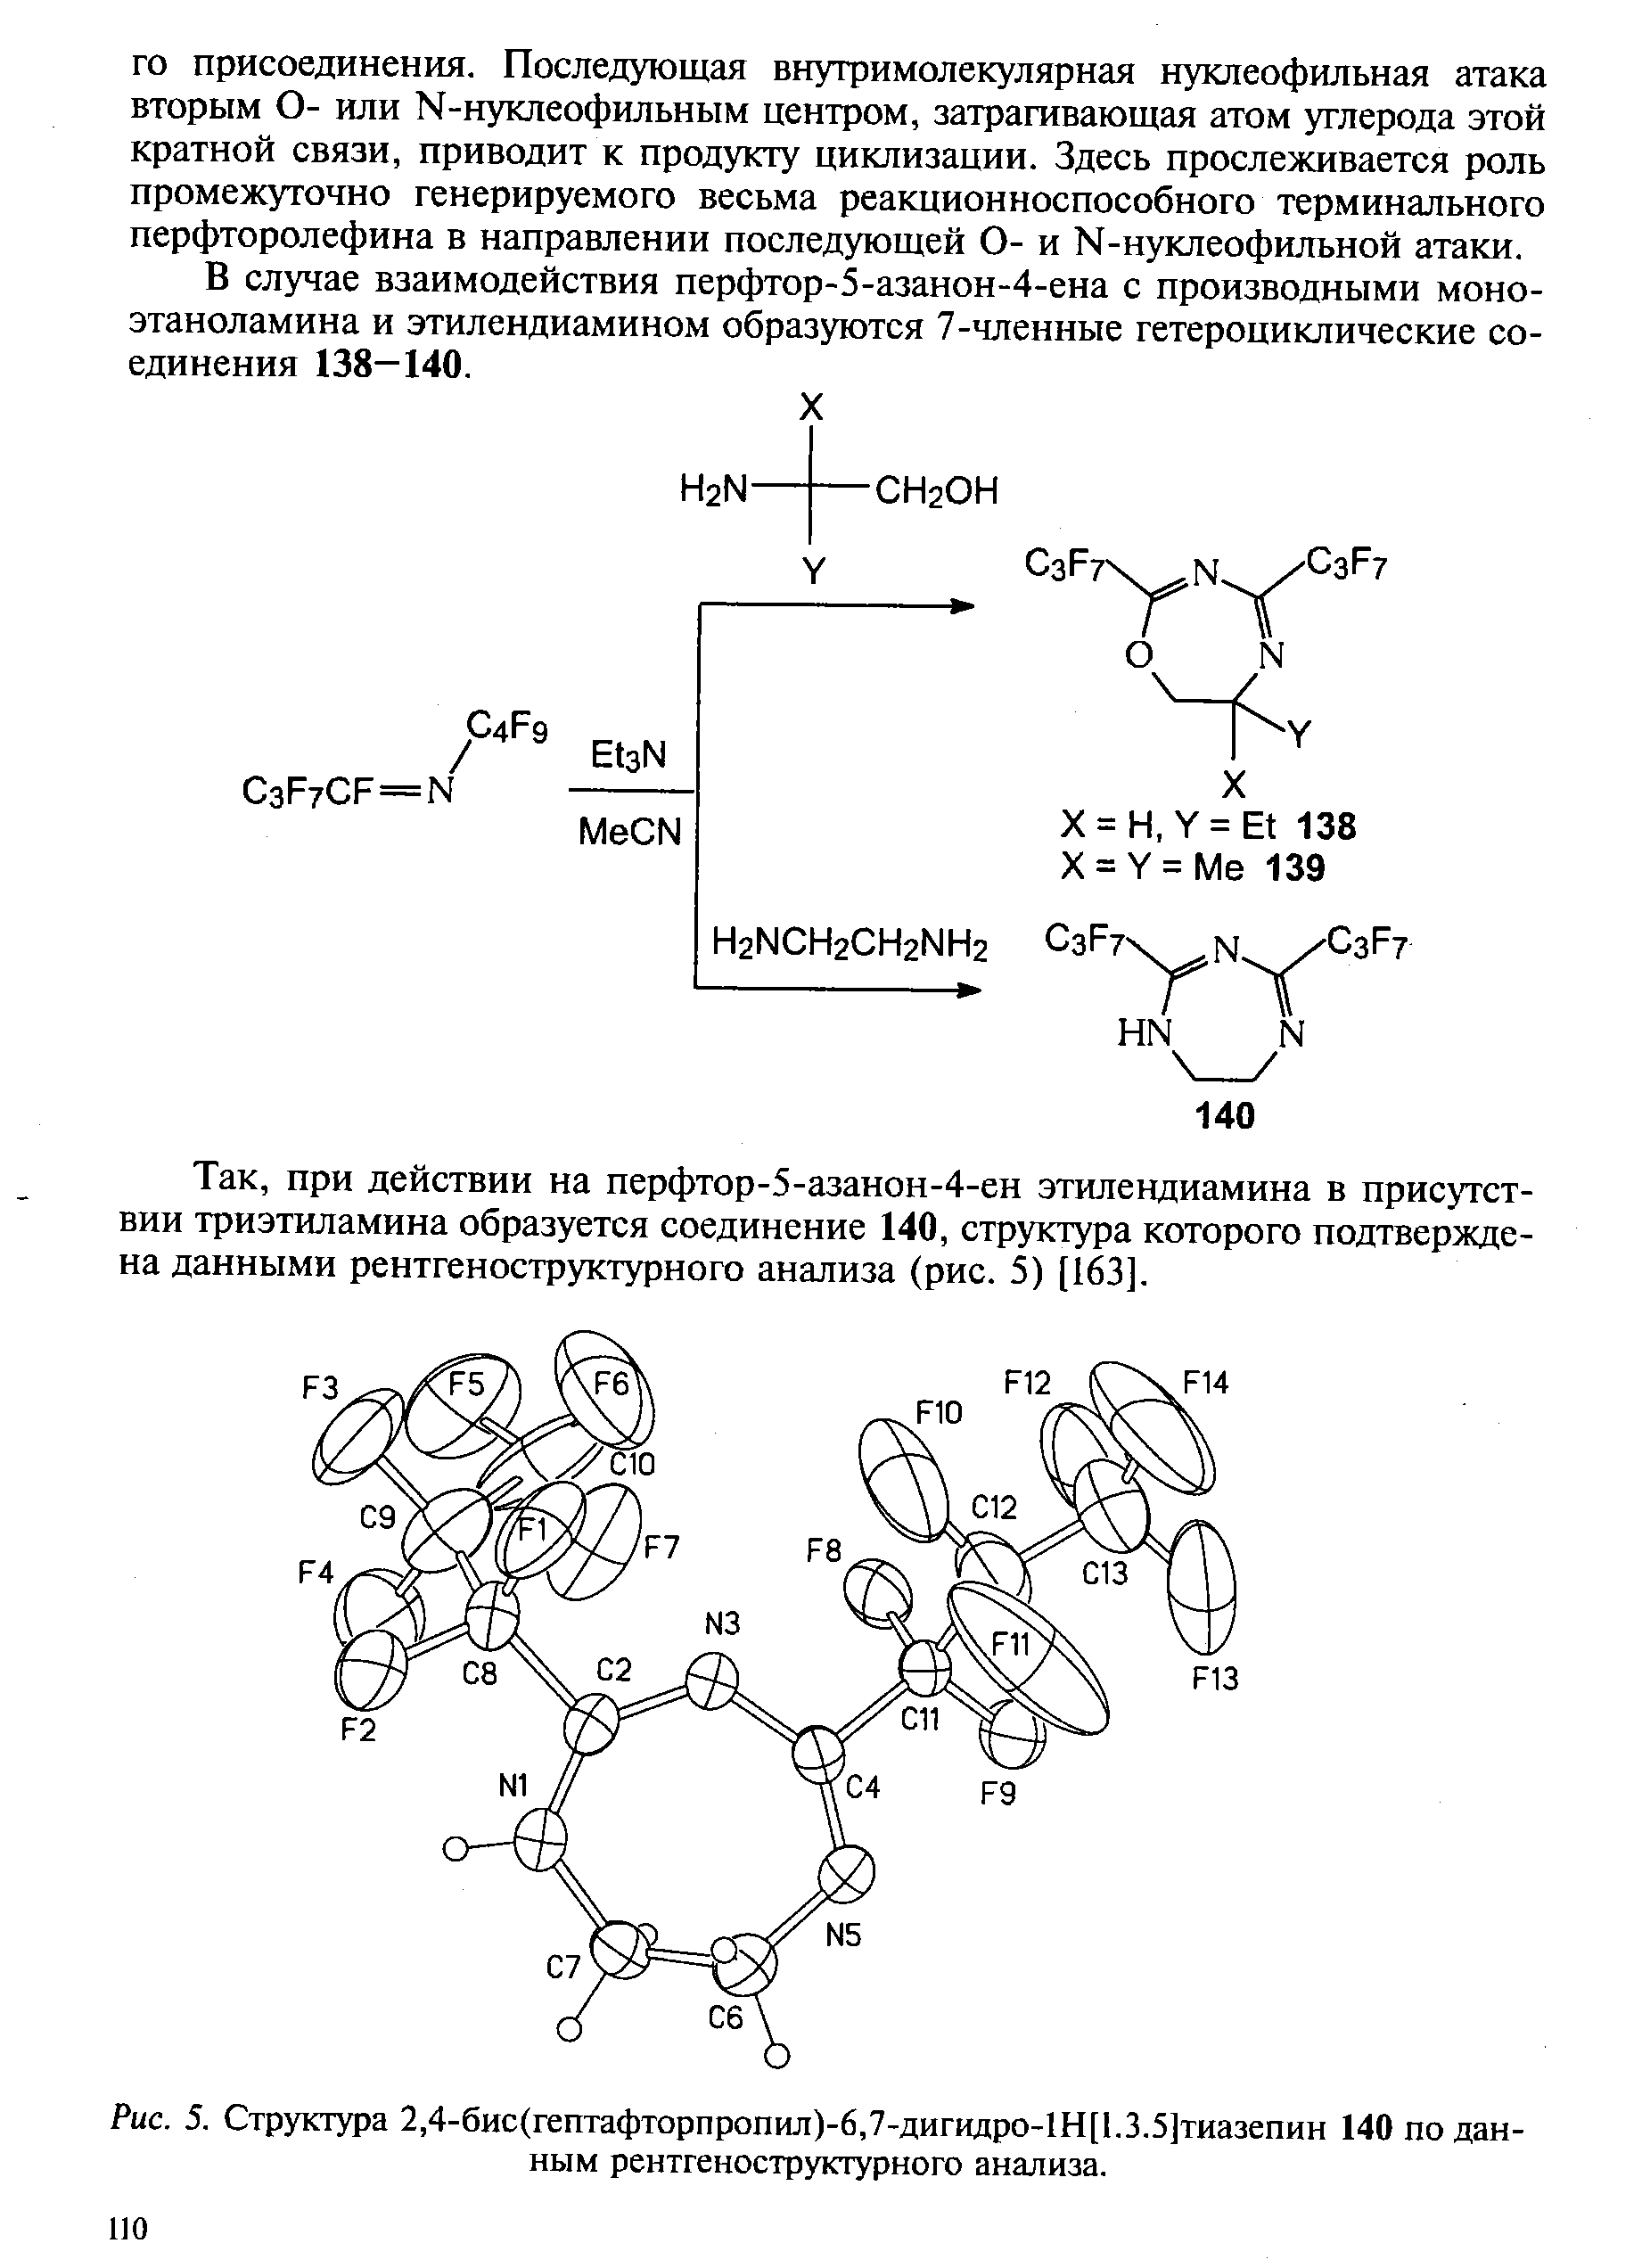 В случае взаимодействия перфтор-5-азанон-4-ена с производными моноэтаноламина и этилендиамином образуются 7-членные гетероциклические соединения 138—140.